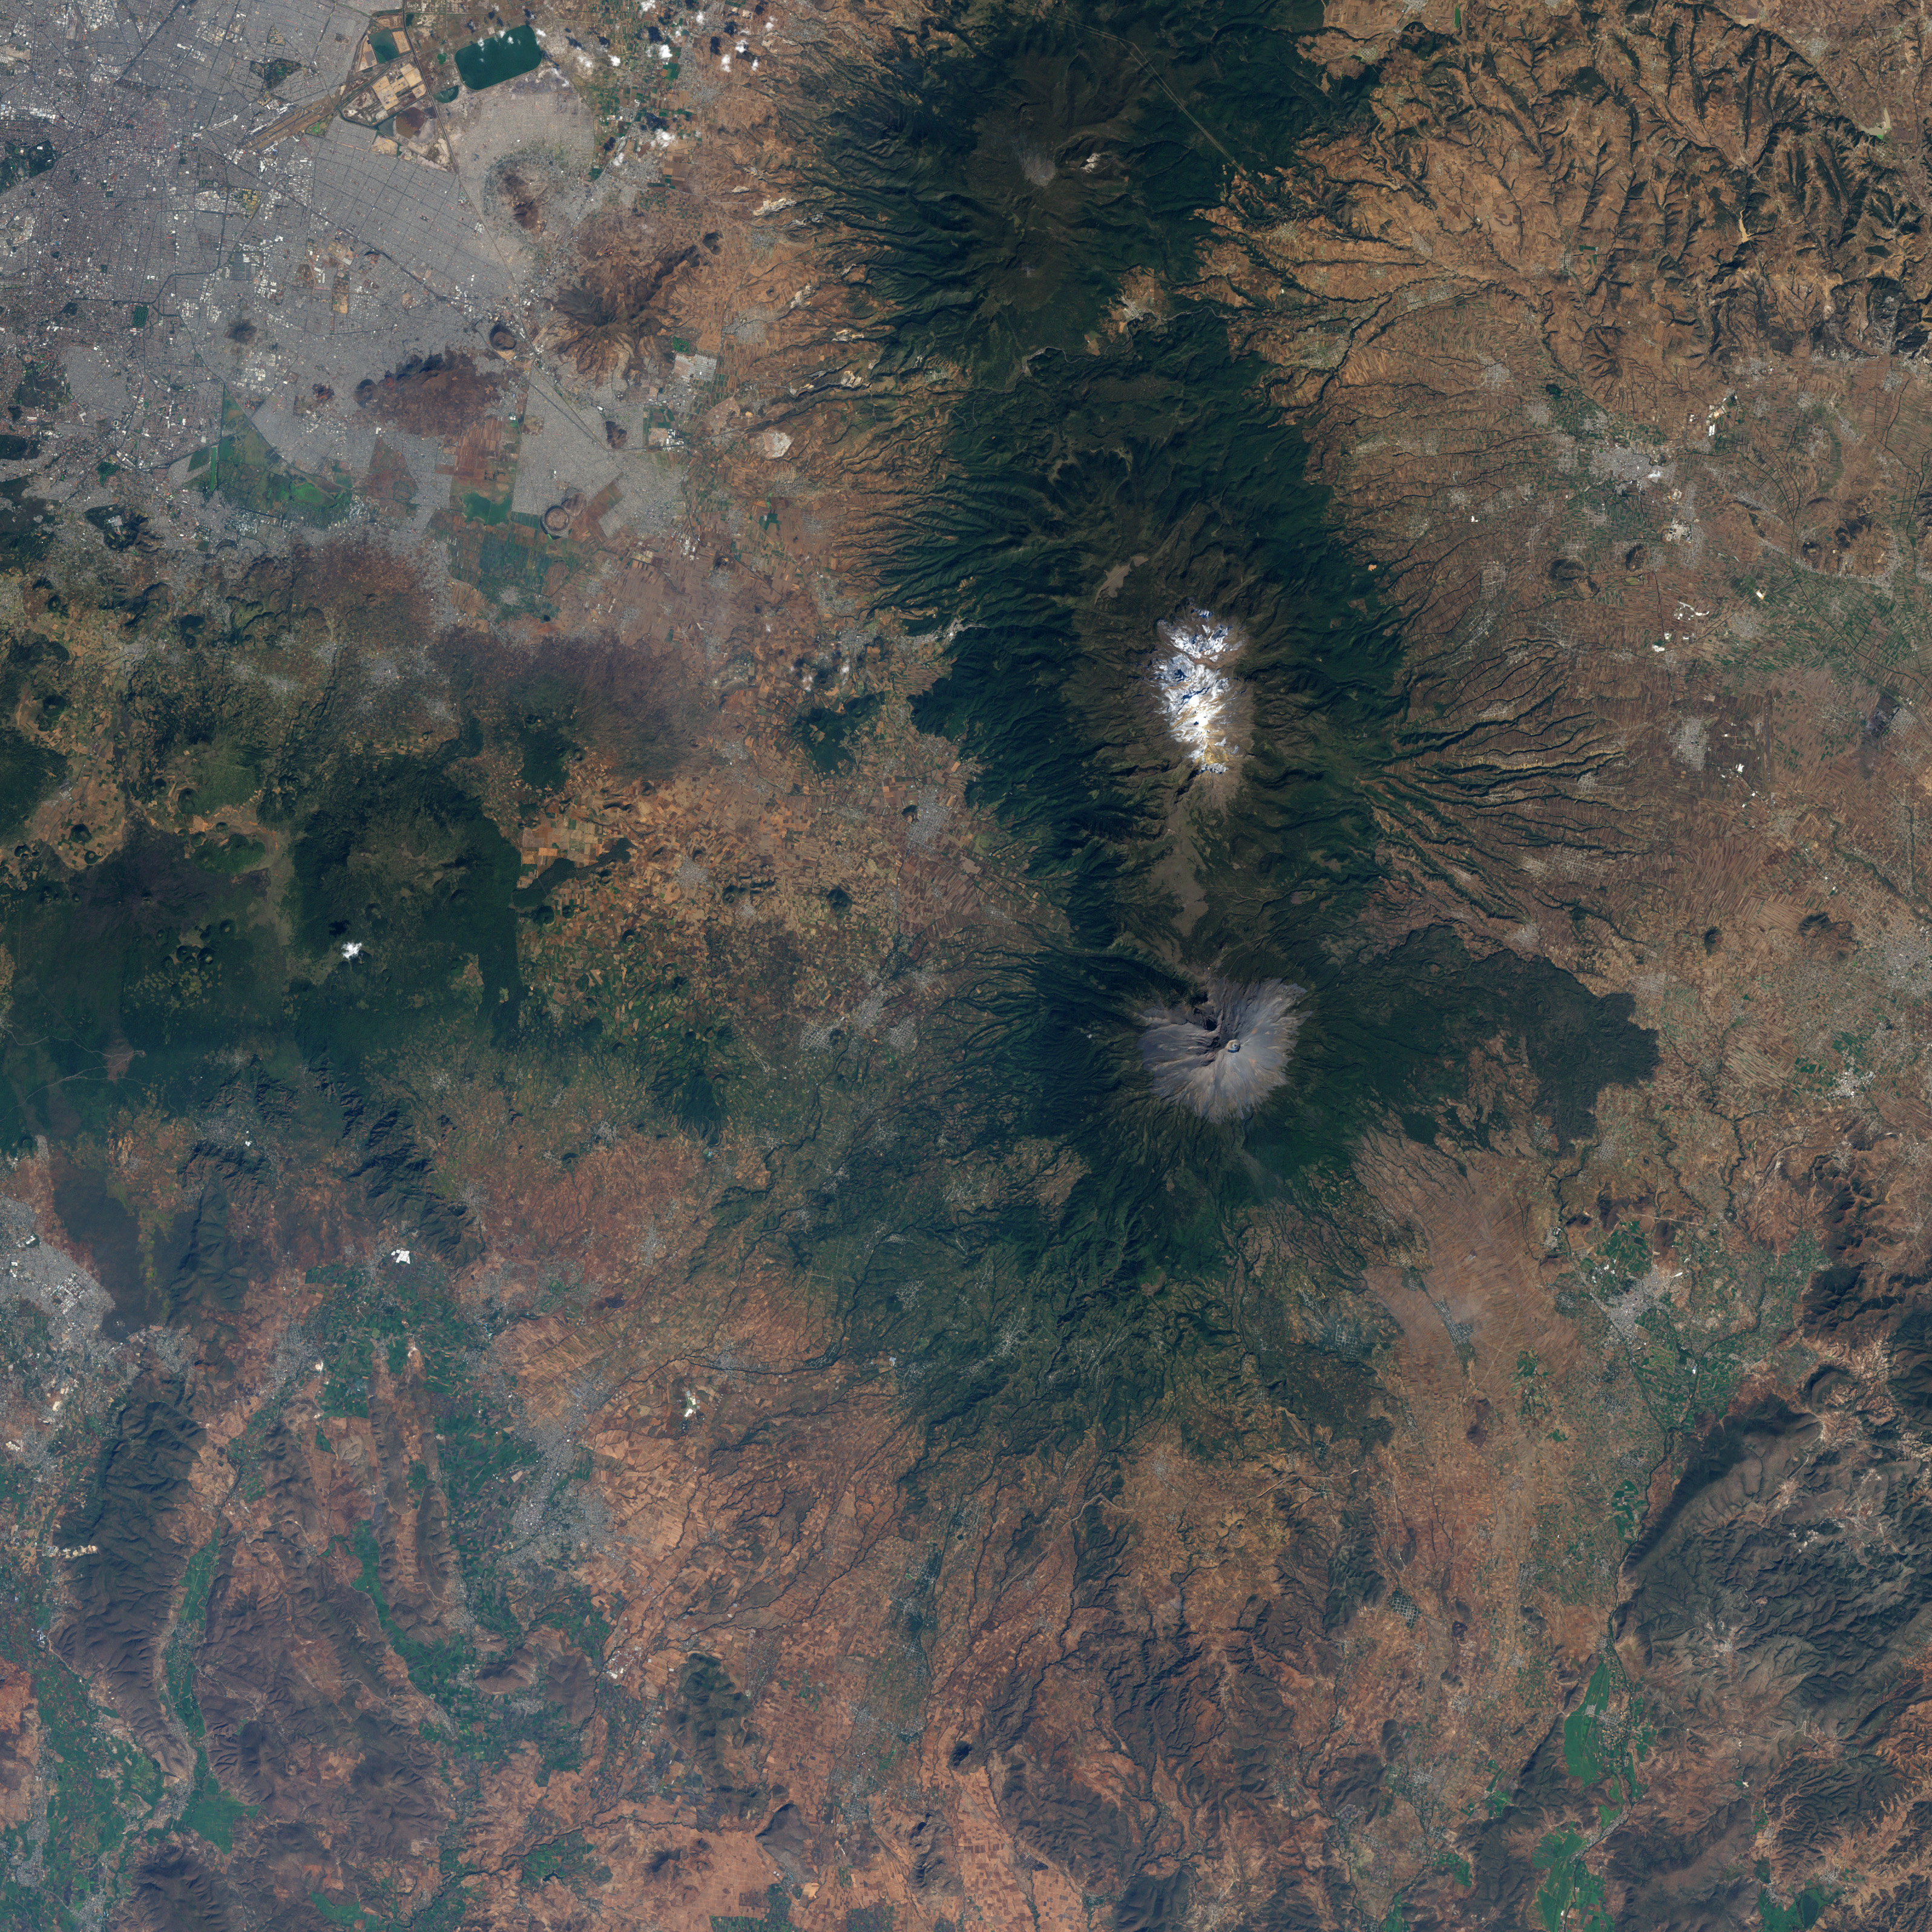 Volcán Popocatépetl, México